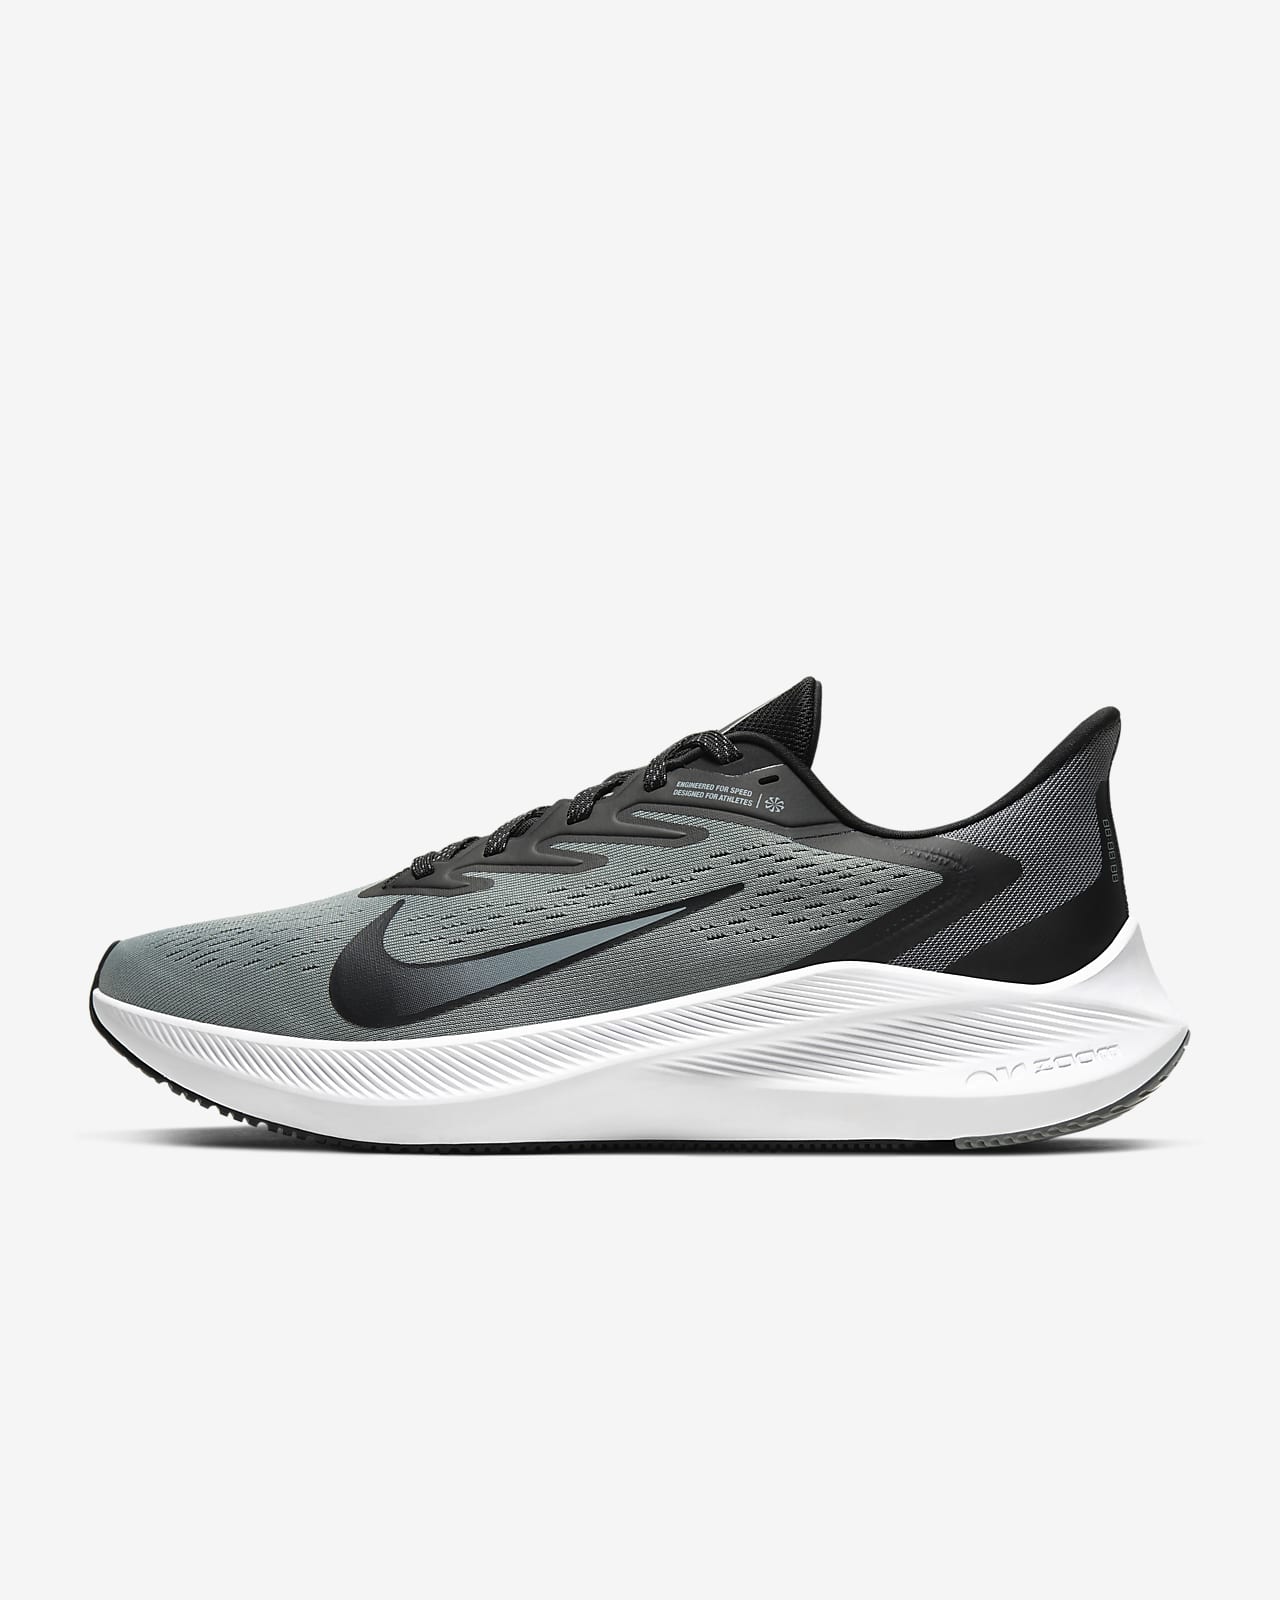 ملابس شانيل نسائي Nike Air Zoom Winflo 7 Men's Road Running Shoes ملابس شانيل نسائي